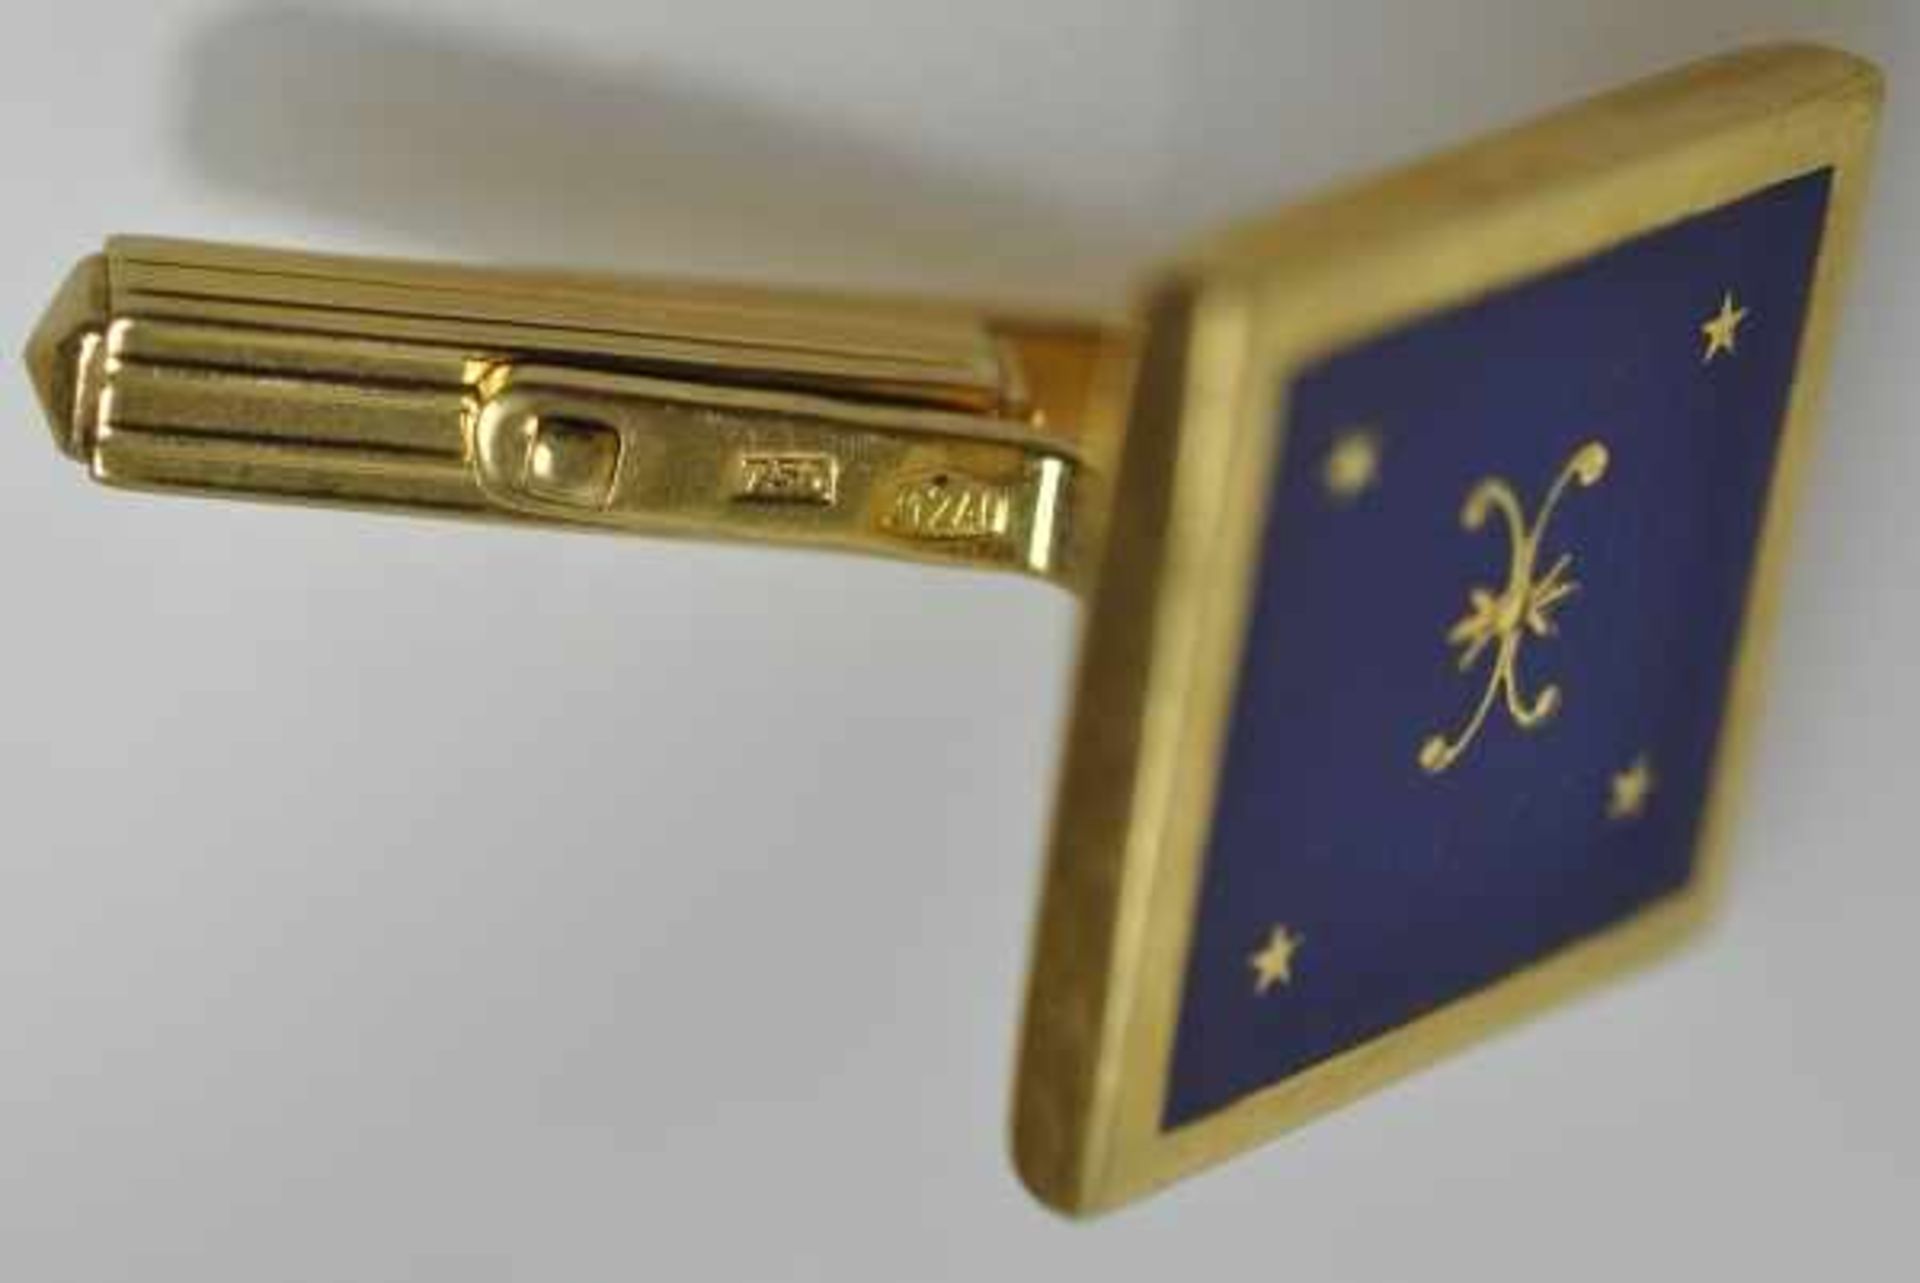 PAAR MANSCHETTENKNÖPFE viereckig, blaues Email mit eingelegten Goldelementen als Dekor, Gelbgold - Image 3 of 3